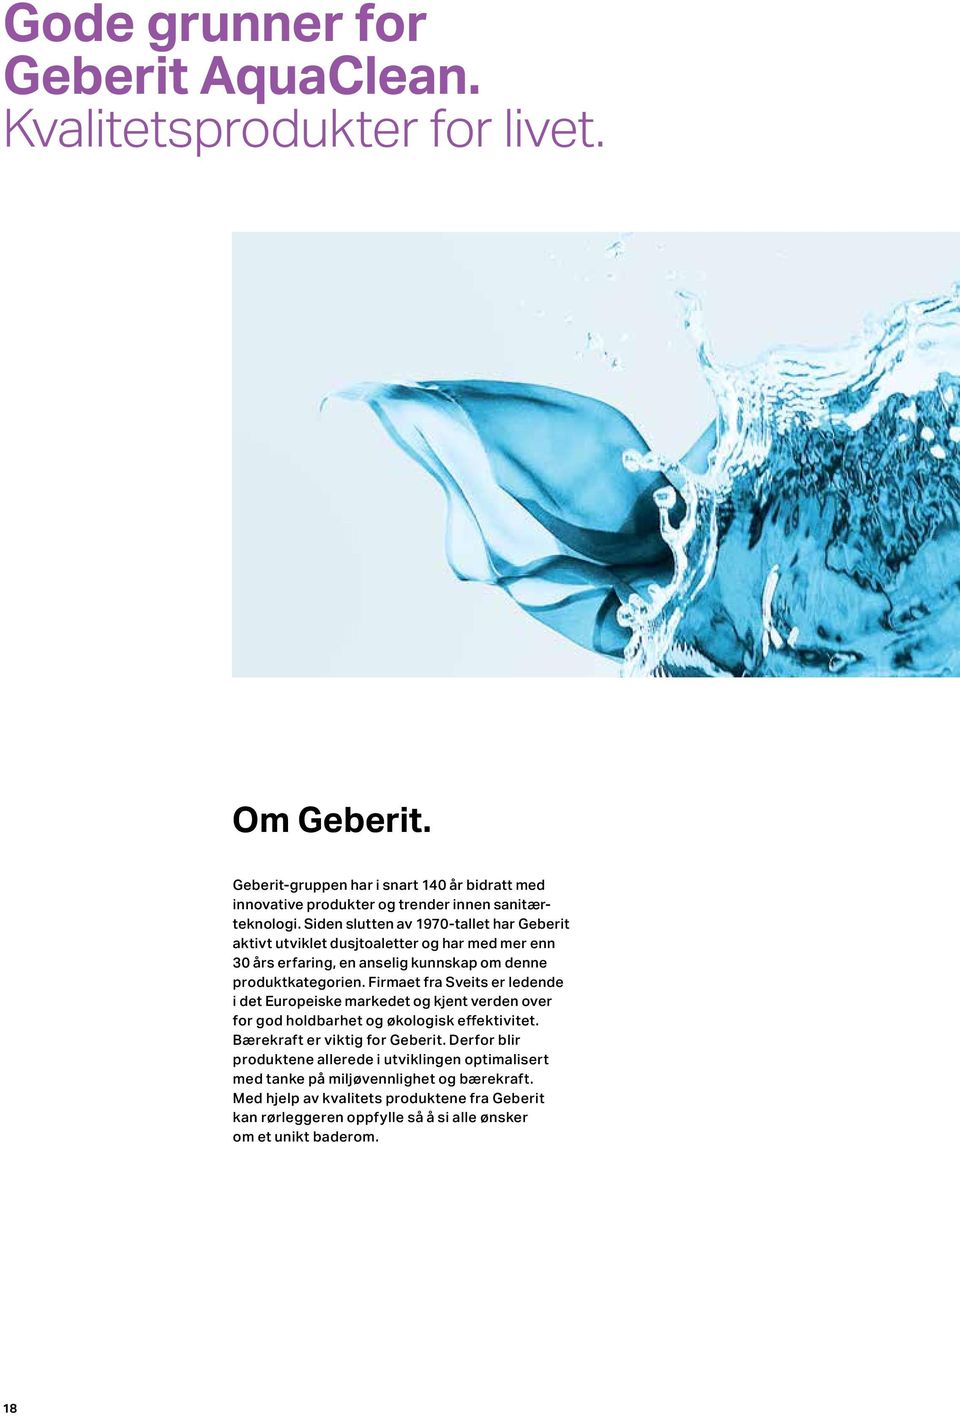 Siden slutten av 1970-tallet har Geberit aktivt utviklet dusjtoaletter og har med mer enn 30 års erfaring, en anselig kunnskap om denne produktkategorien.